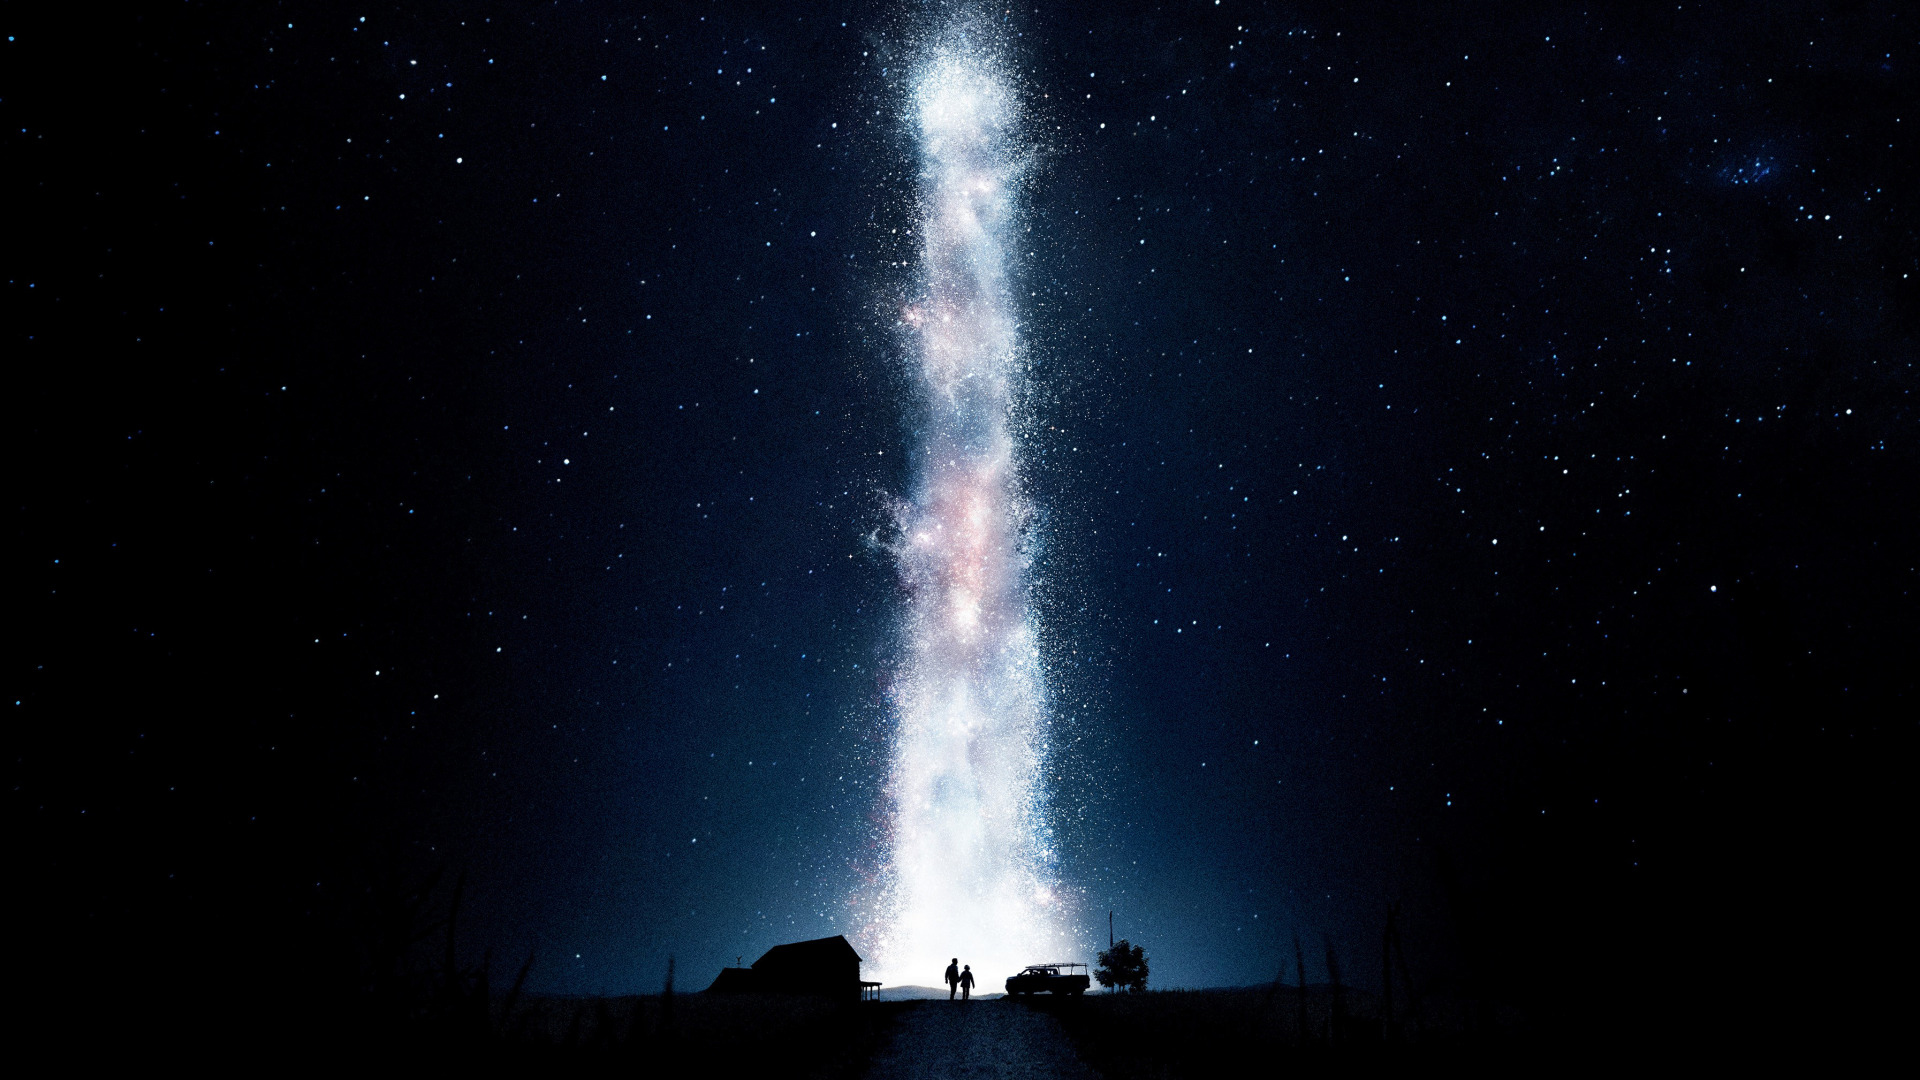 【1080p】《星际穿越》"克里斯托弗诺兰"经典科幻片重映补档壁纸